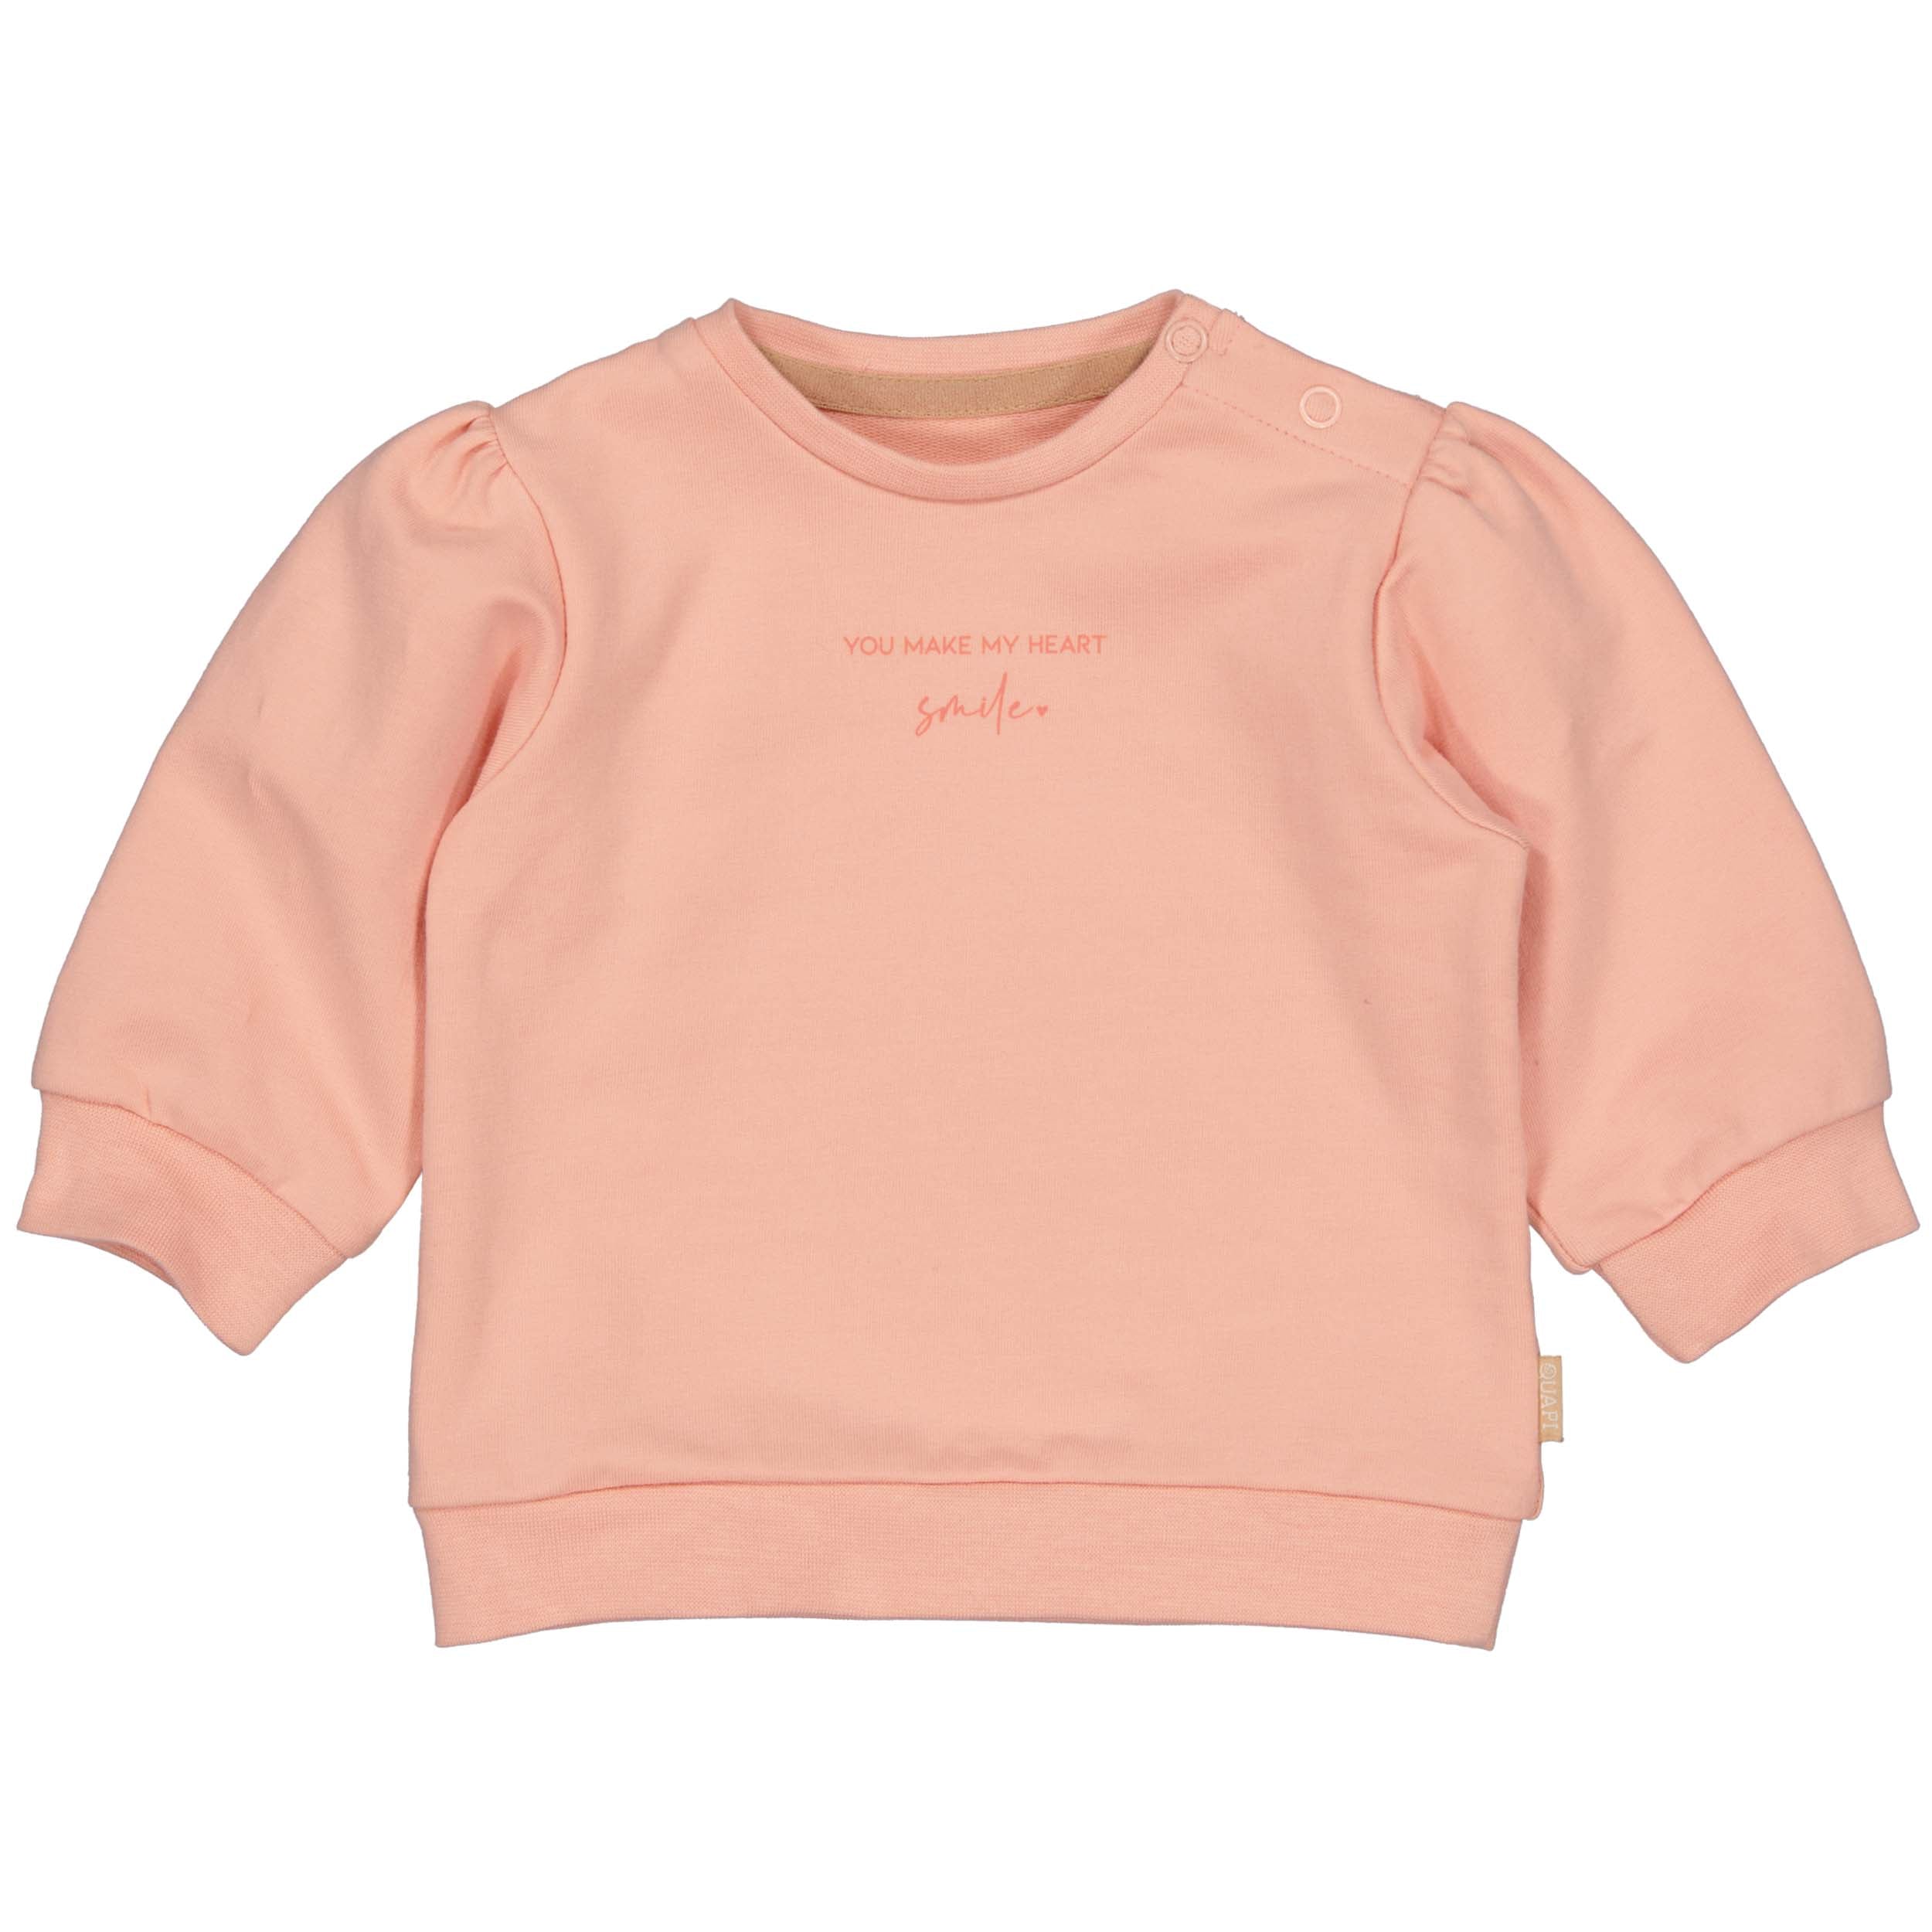 Meisjes Sweater CELIZEQNBW23 van Quapi Newborn in de kleur Pink Peach in maat 68.